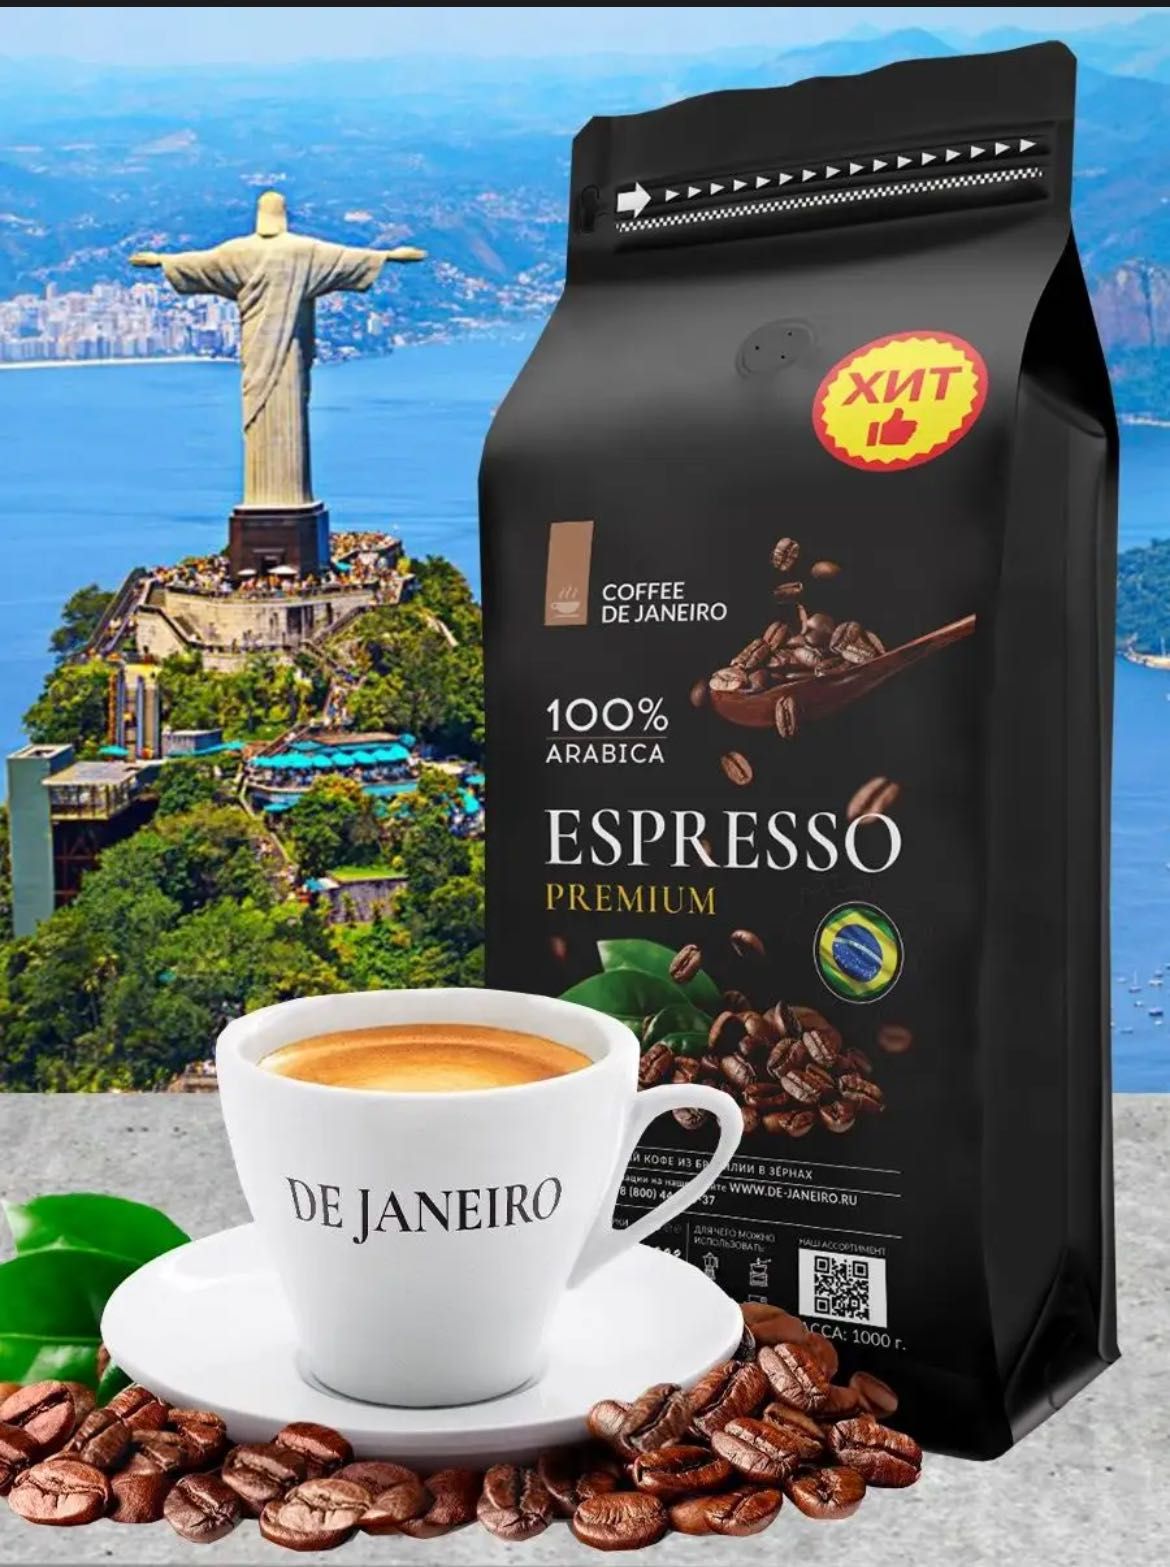 COFFEE DE JANEIRO (ДЕ ЖАНЕЙРО) - настоящий
бразильский кофе в зернах.